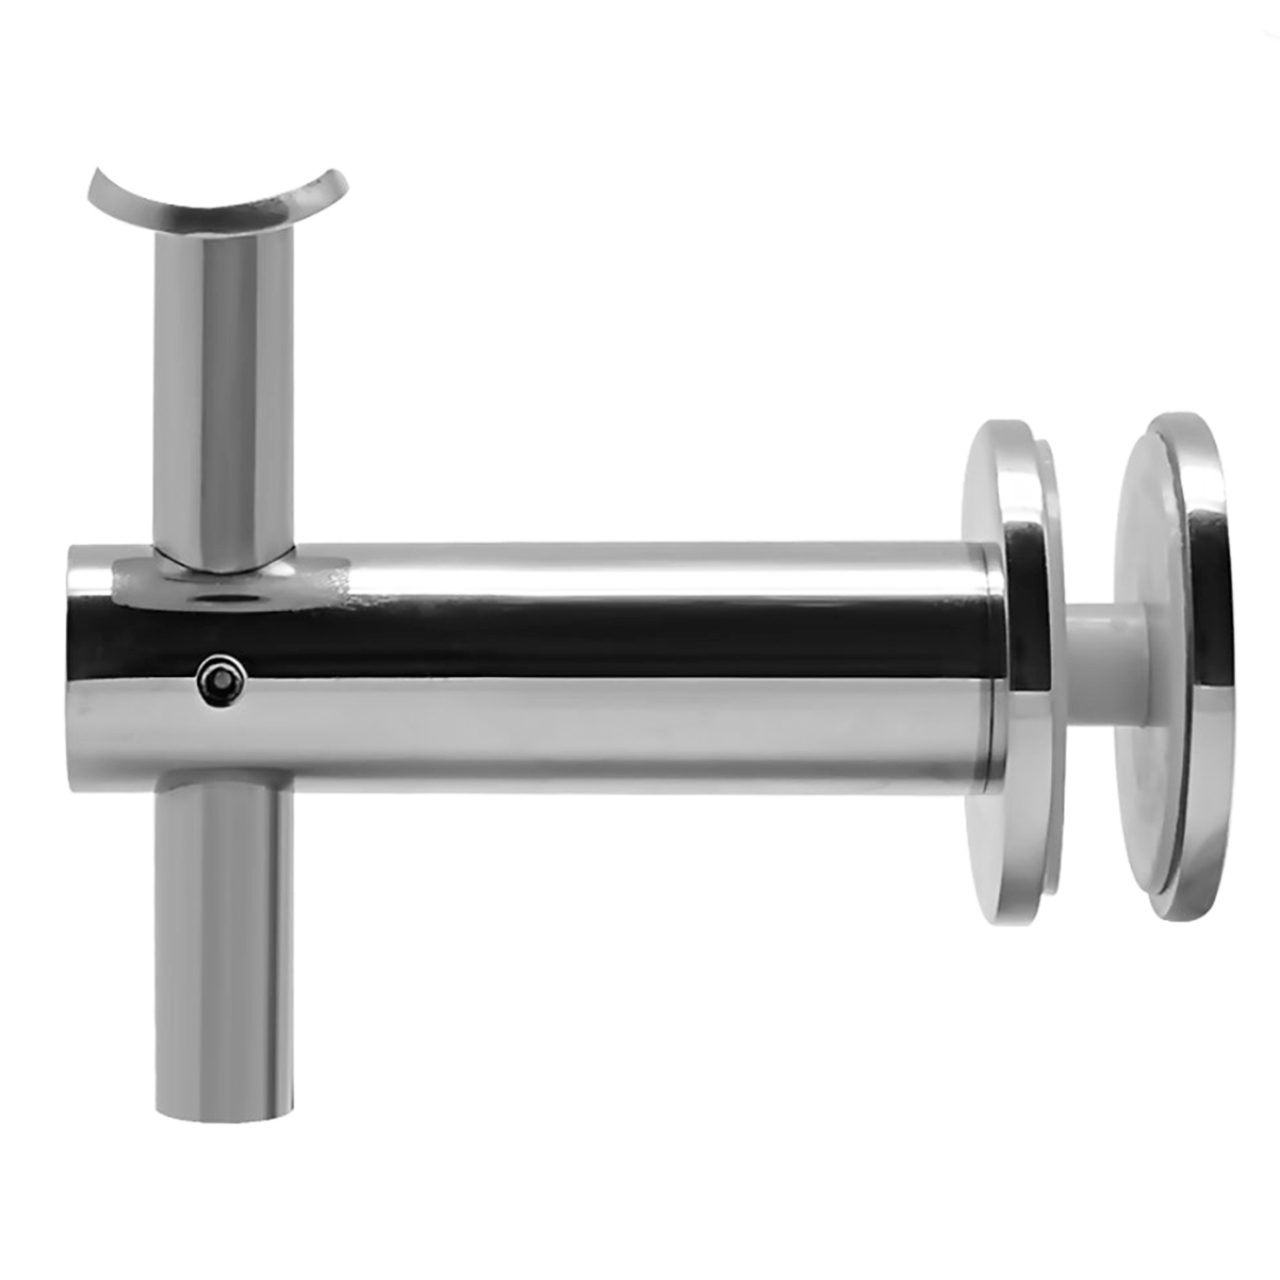 Handrail Bracket Pipe Holder For Glass Railings Tube Handrail Support Balustrade Fittings